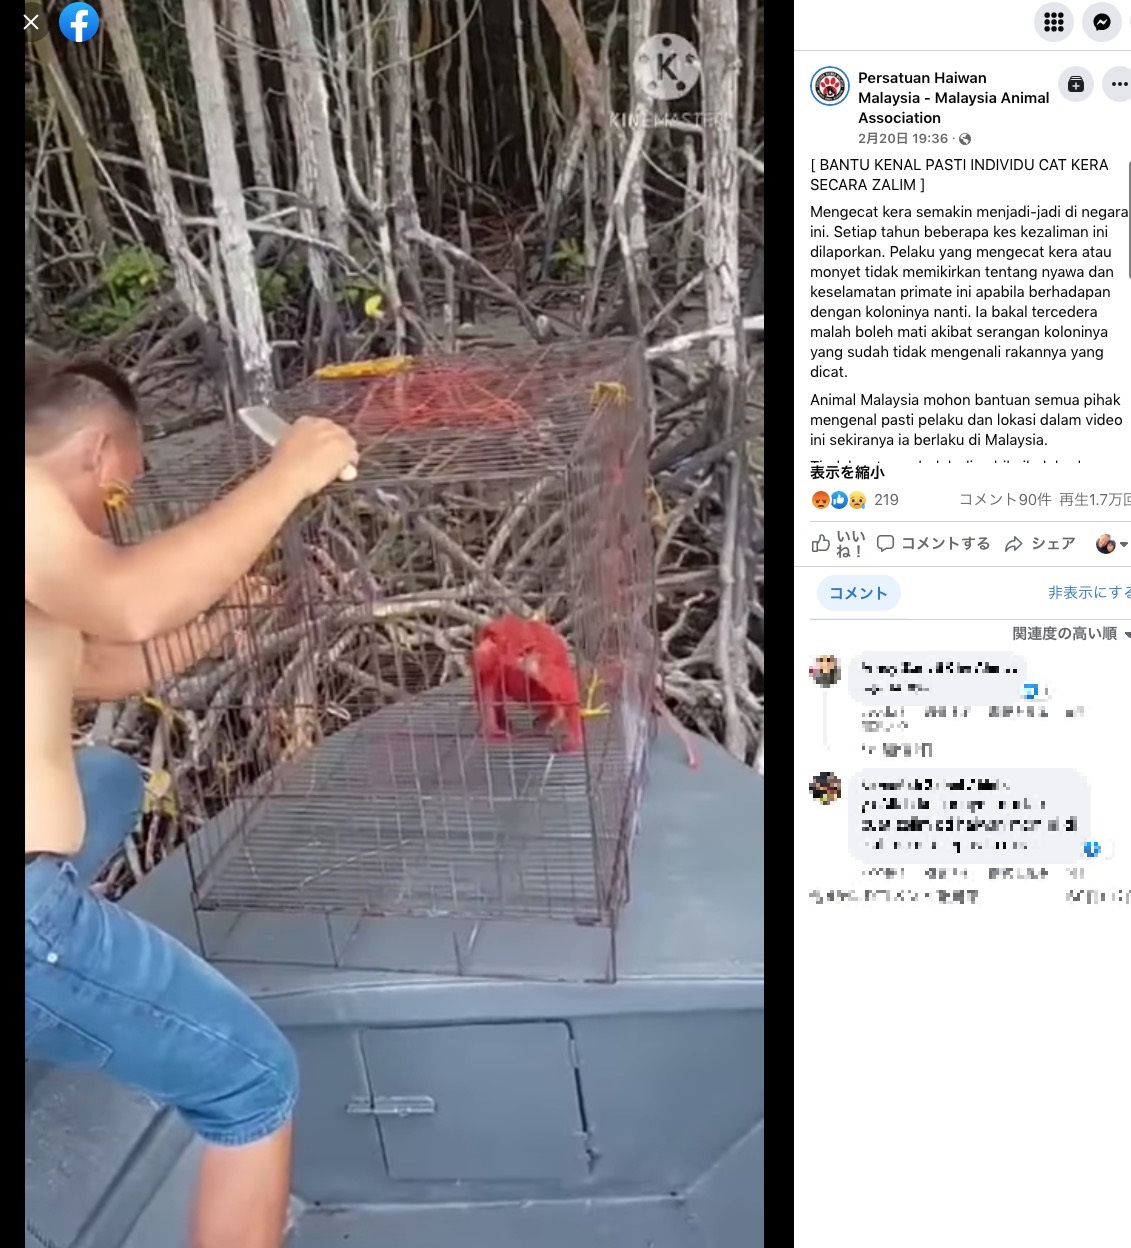 赤く塗られた猿の動画に非難の声が殺到（画像は『Persatuan Haiwan Malaysia - Malaysia Animal Association　2022年2月20日付「［BANTU KENAL PASTI INDIVIDU CAT KERA SECARA ZALIM］」』のスクリーンショット）